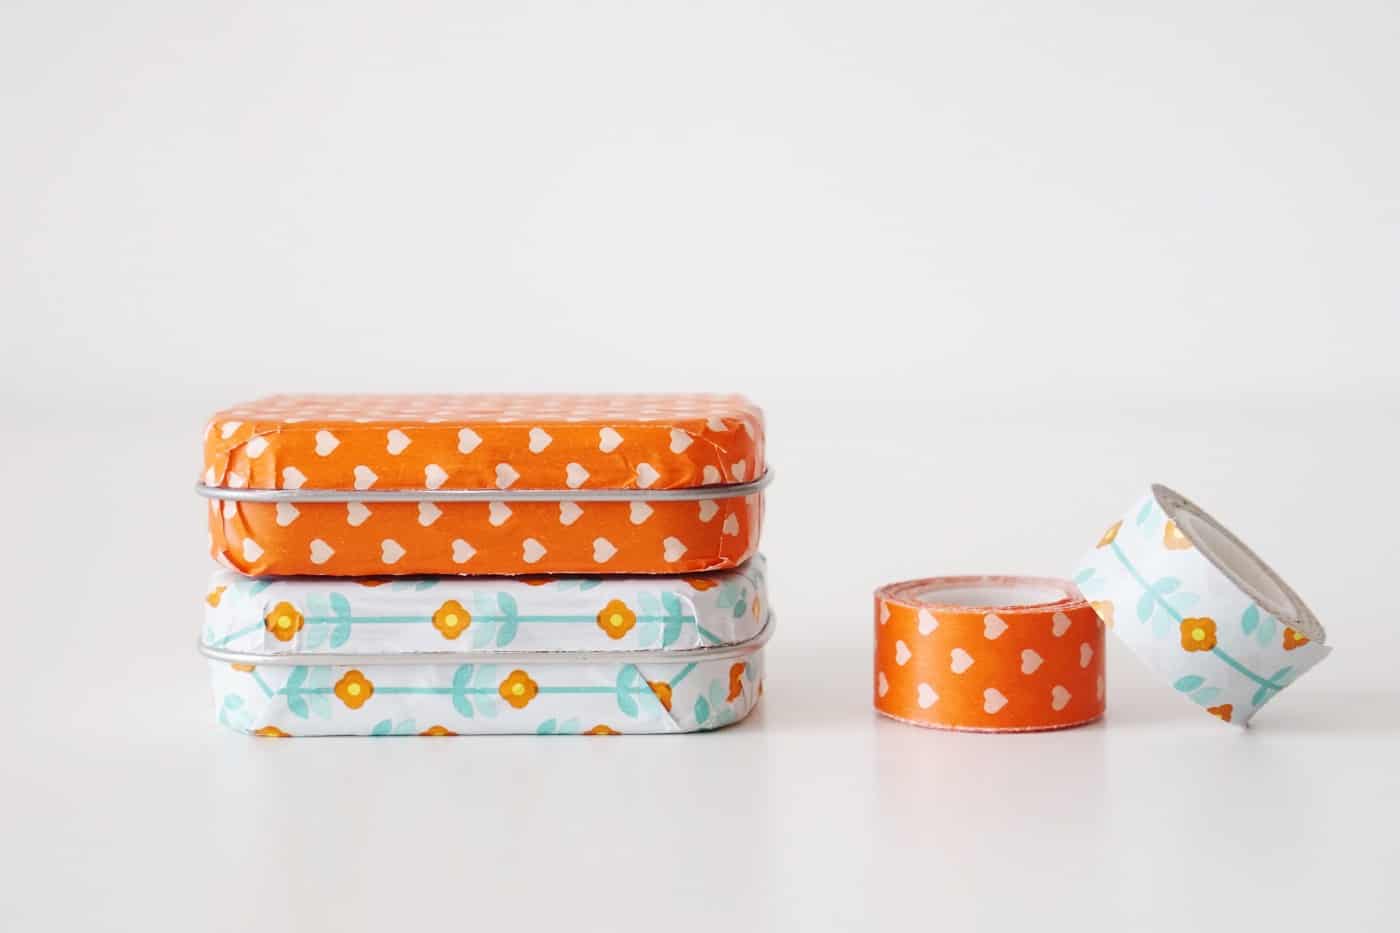 Als je dol bent op washi tape knutselwerkjes, pak dan je favoriete patroon, een gebruikt muntblikje, en maak er een schattig houdertje van! Dit is zo'n leuke en makkelijke geupcyclede knutsel!